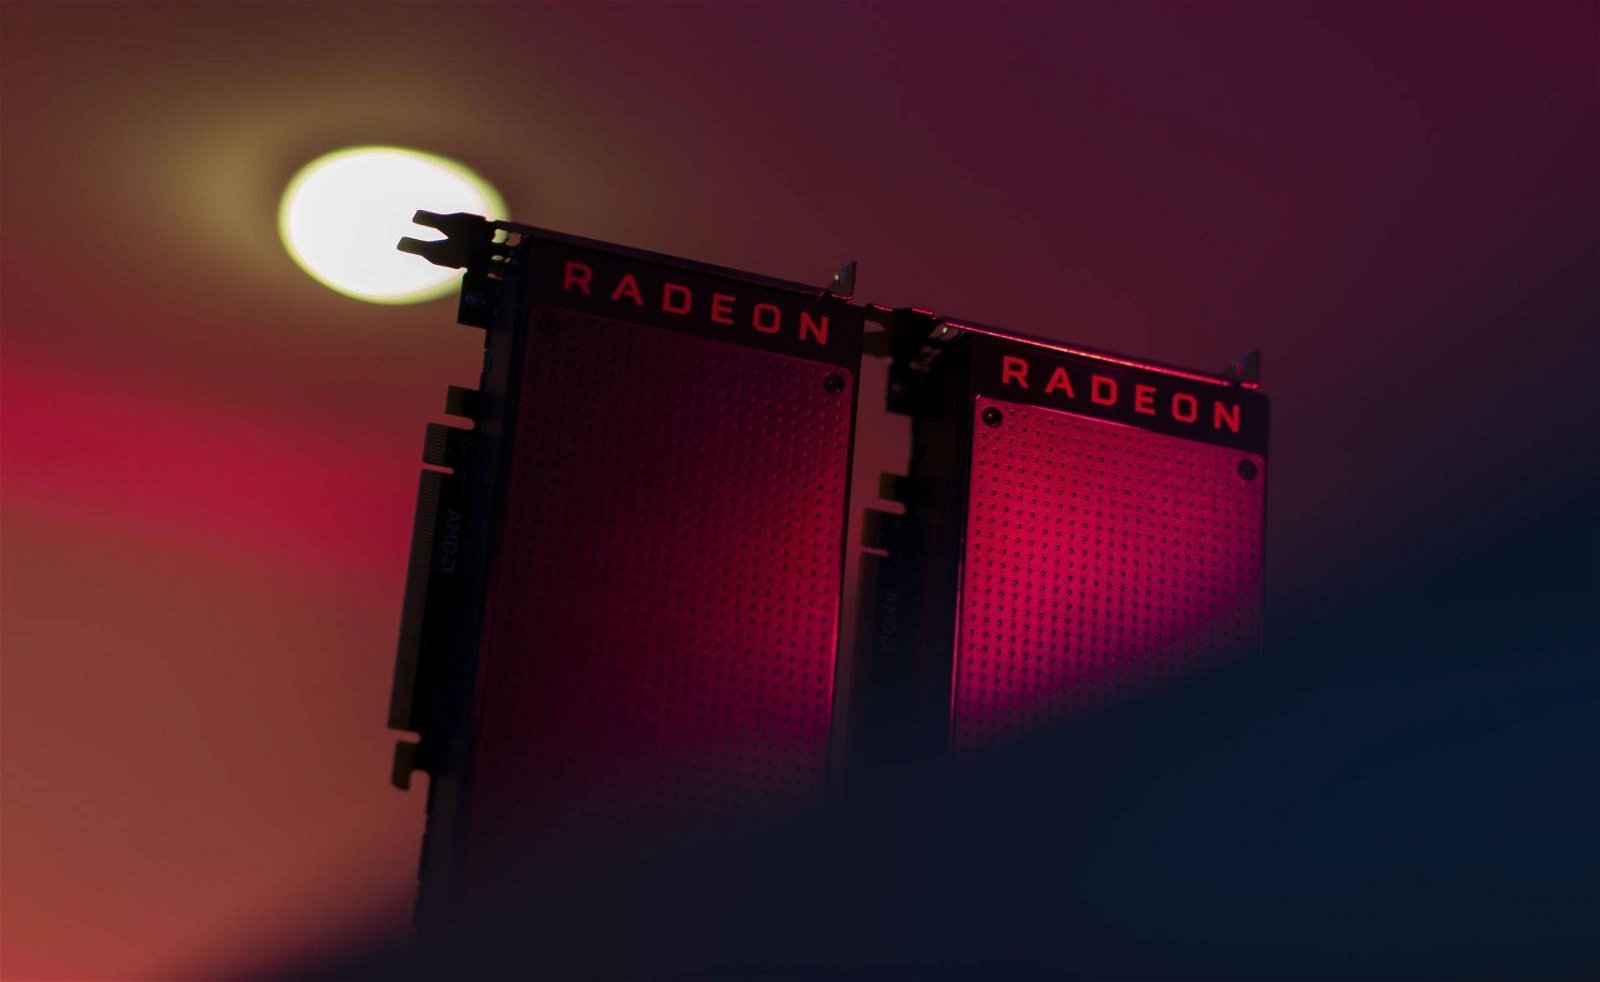 Immagine di AMD Radeon pronte per Just Cause 4 con i driver 18.12.1 Beta. Nvidia rilascia un hotfix